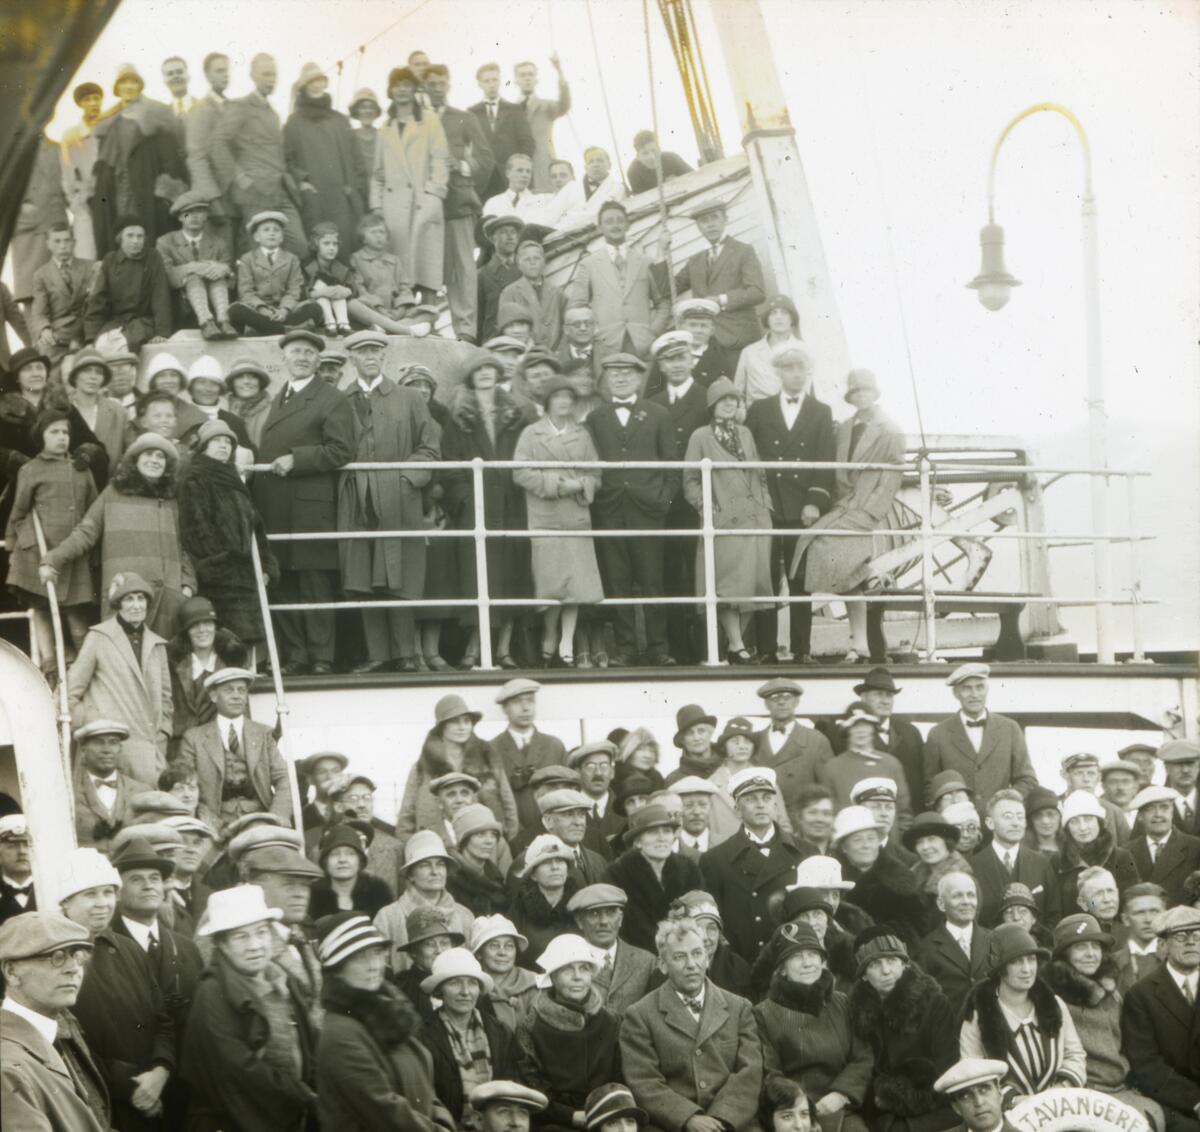 Dias. Passasjerer på passasjerskipet "DS Stavangerfjord" står oppstilt på dekk. Skipet tilhørte Den norske amerikalinje og ble sjøsatt 21. mai 1917 og satt i trafikk i april 1918. 